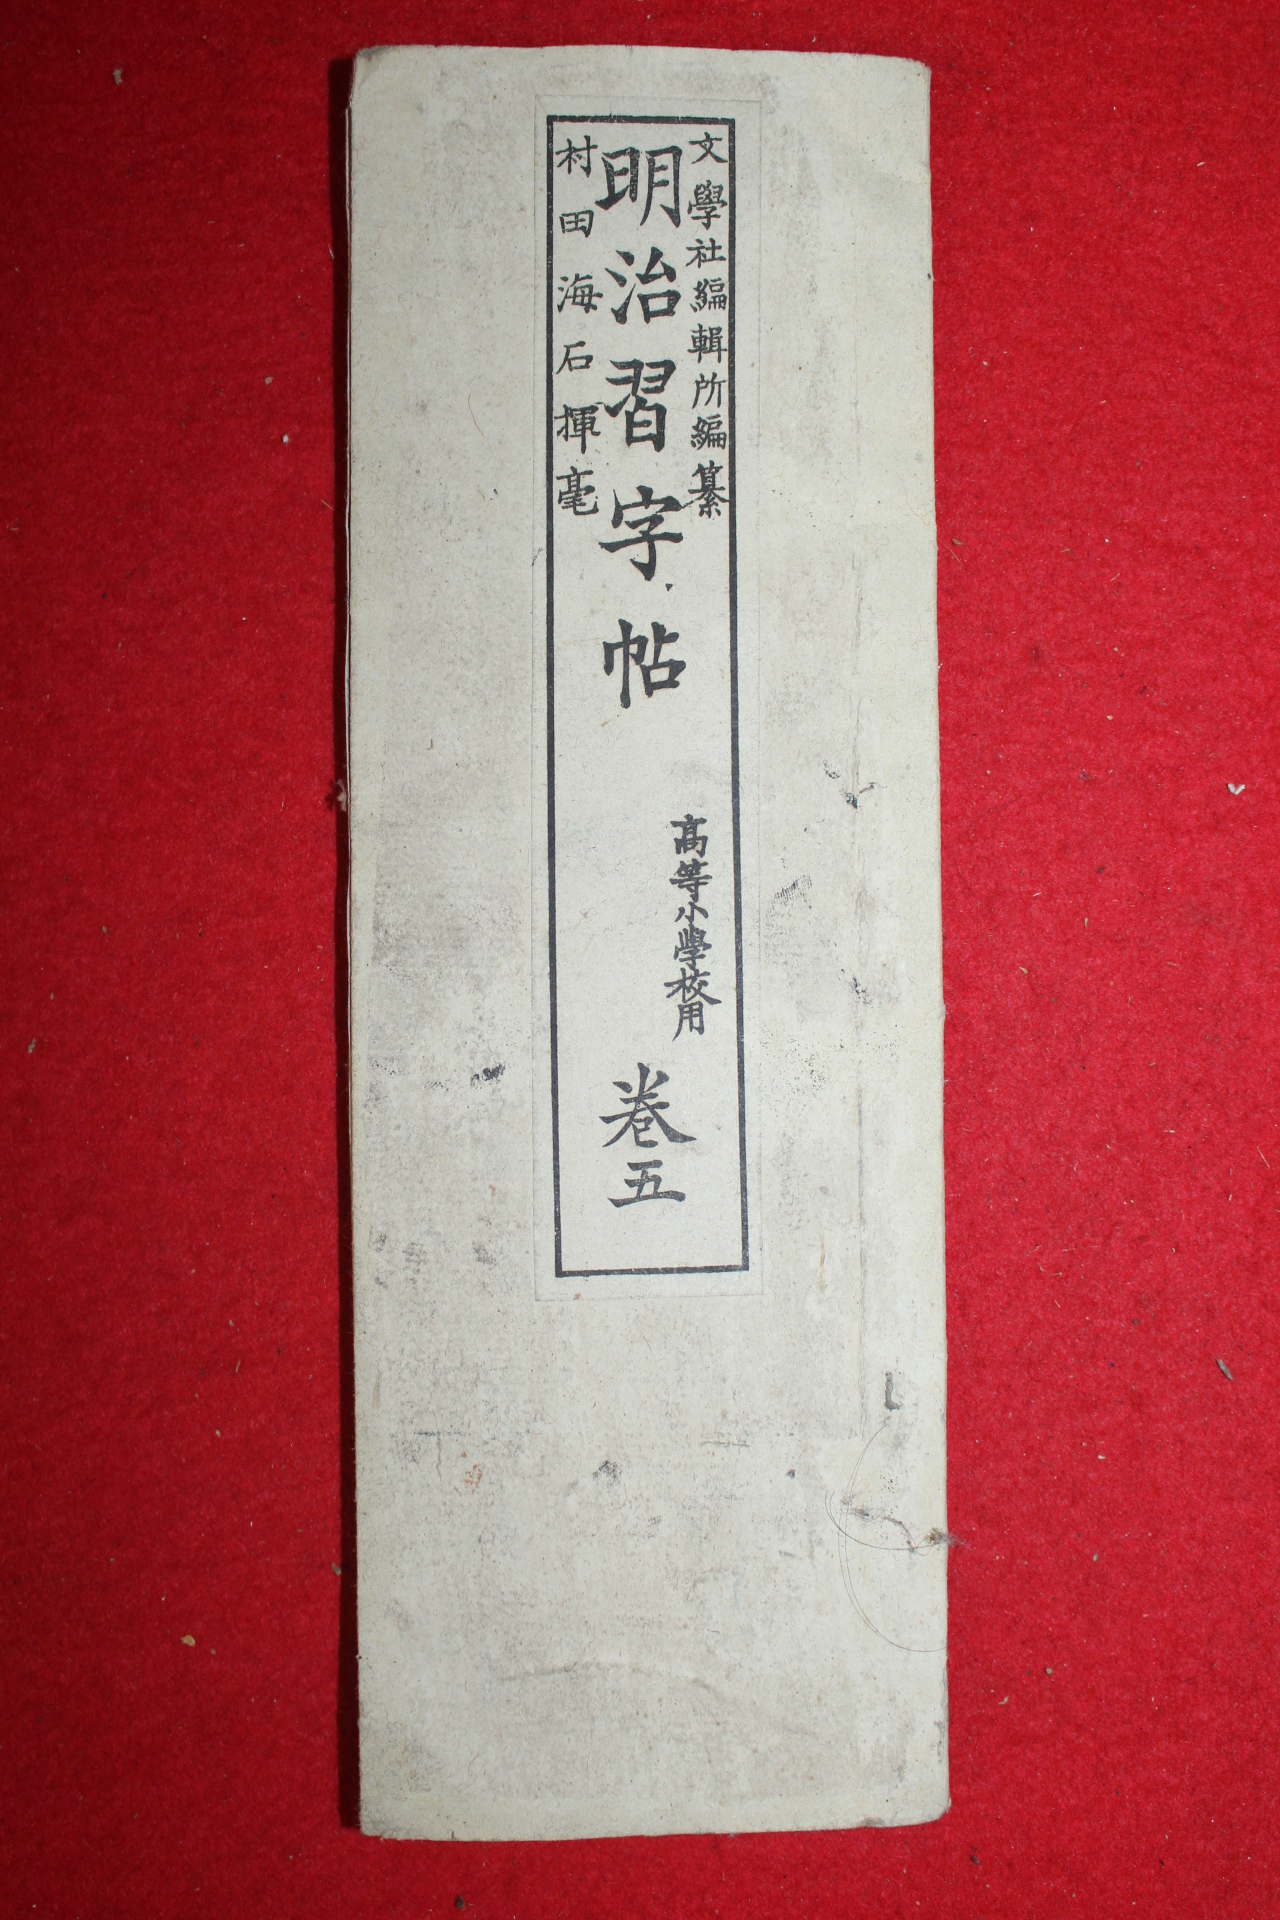 1893년(명치27년) 일본간행 명치습자첩 권5